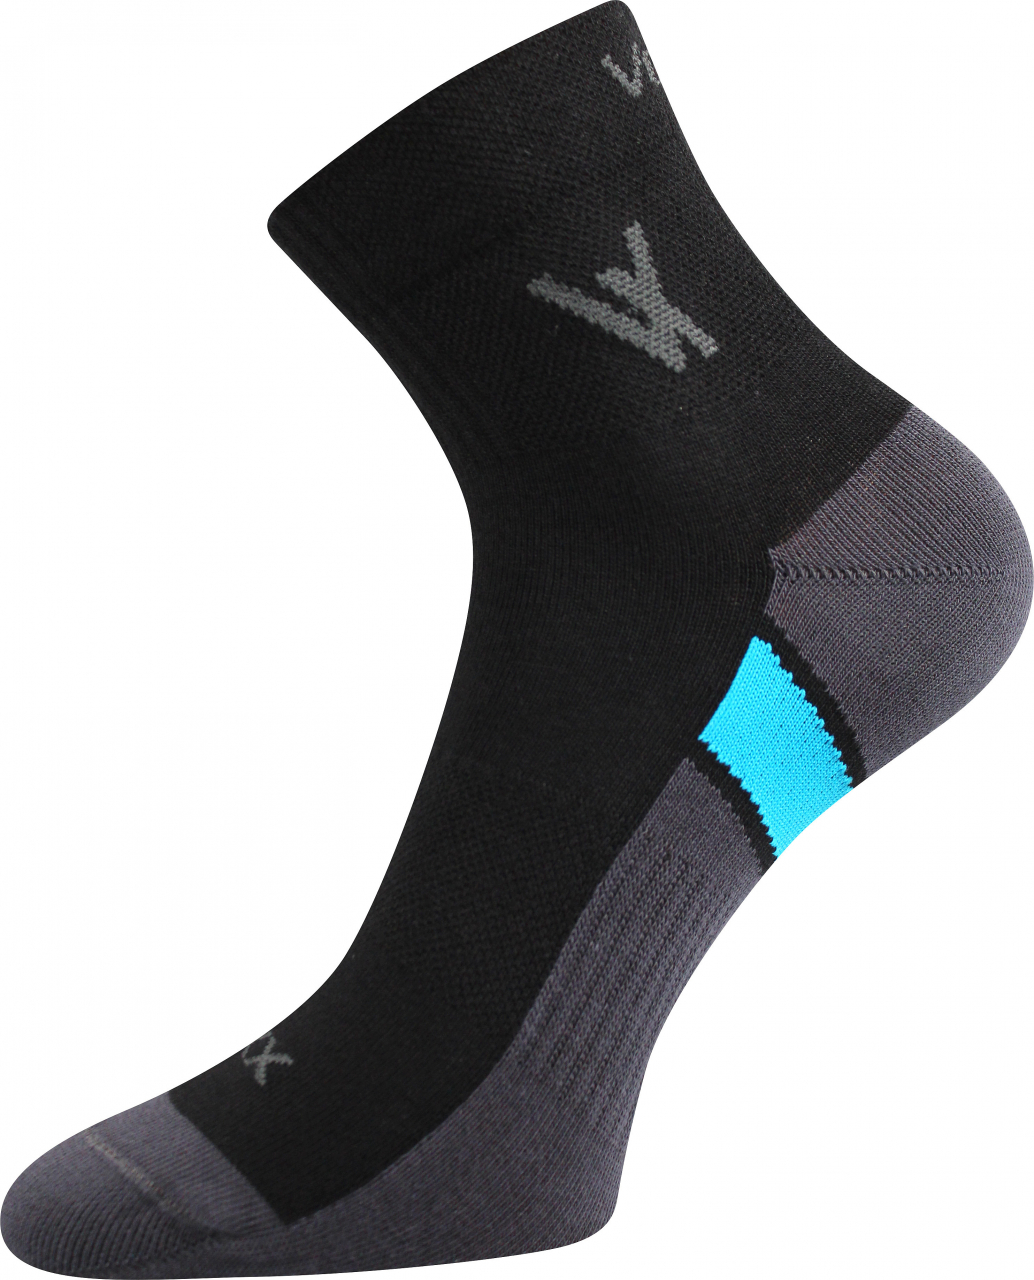 Ponožky sportovní Voxx Neo - černé, 43-46